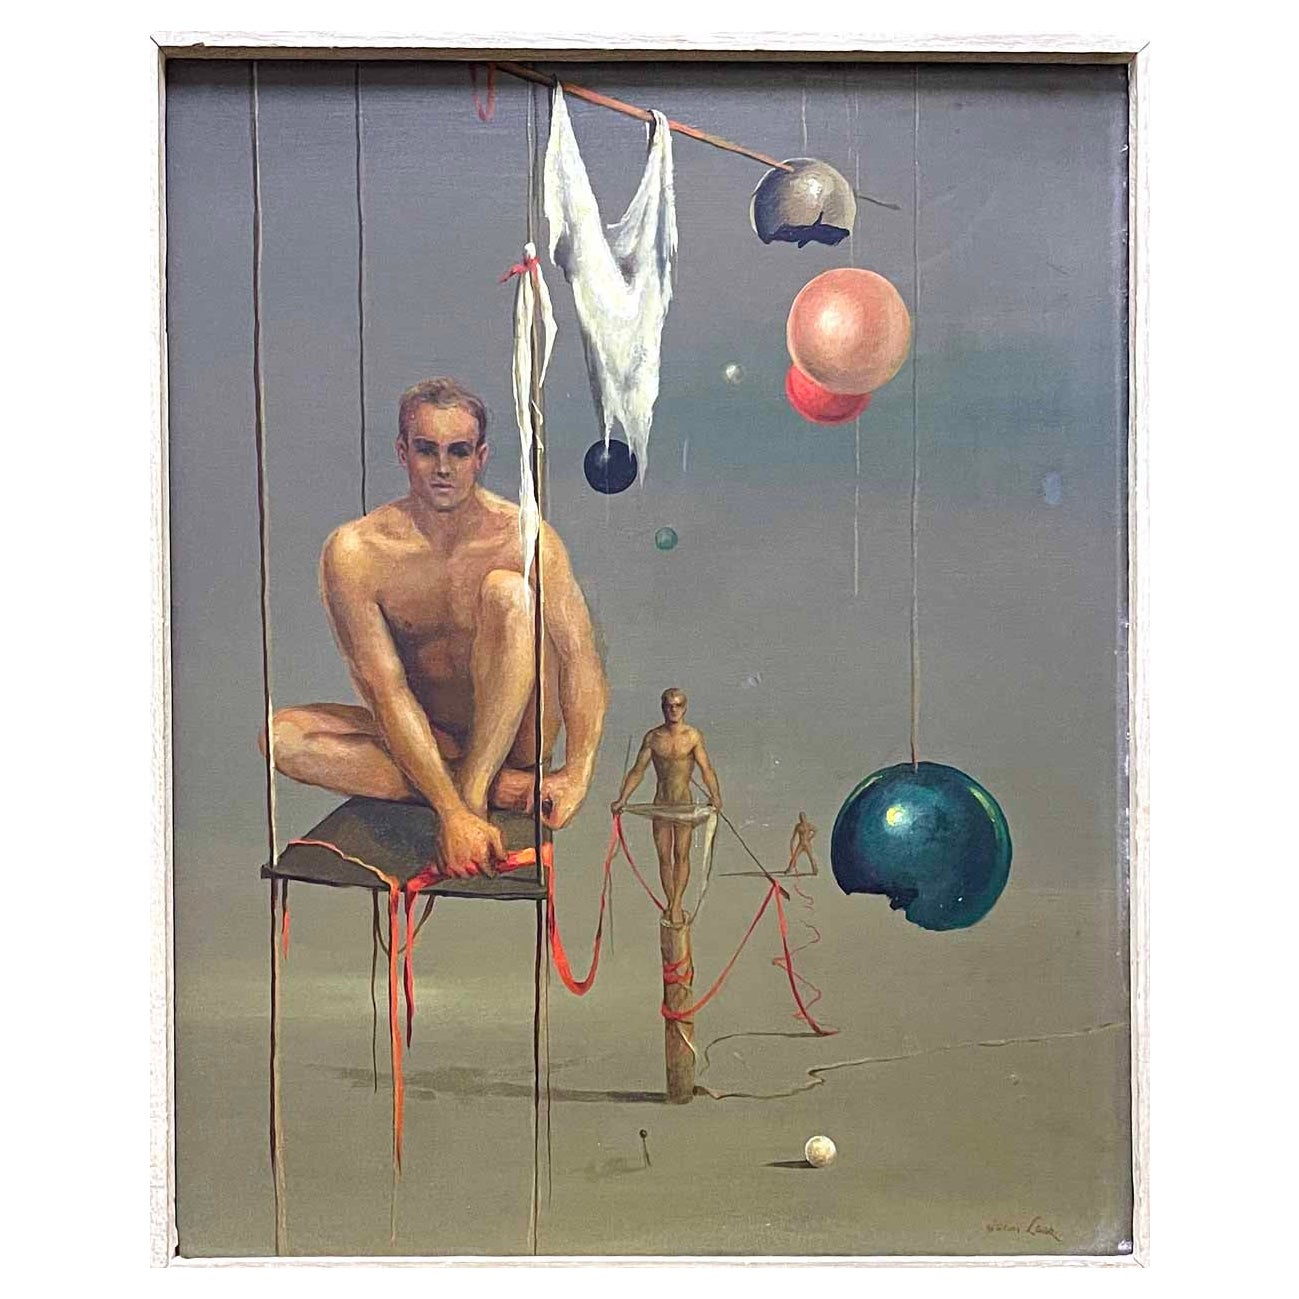 "Cinta roja", pintura surrealista temprana e importante de John Lear con desnudos masculinos en venta